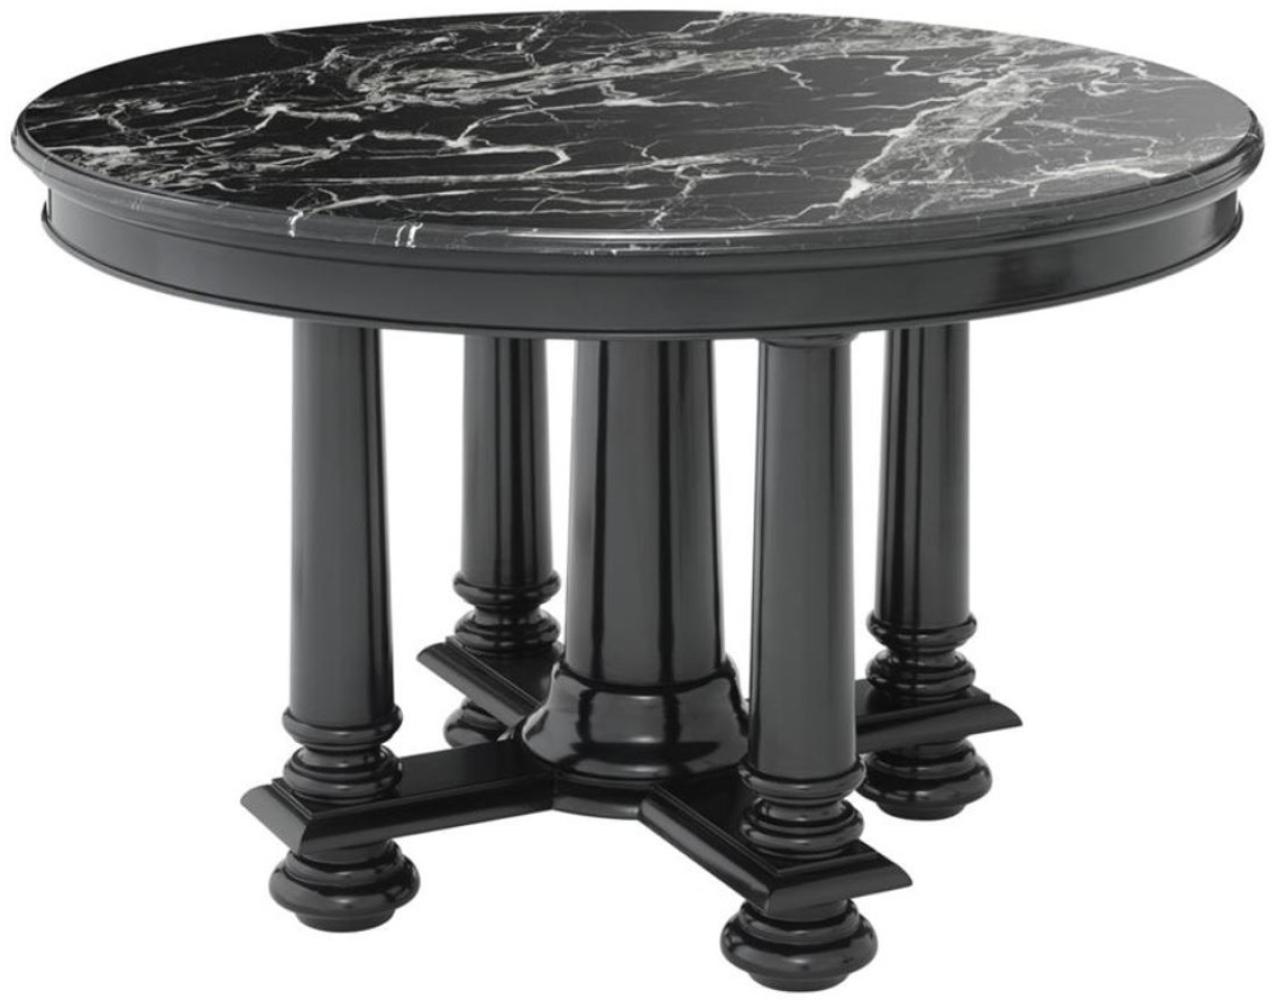 Casa Padrino Luxus Hotel Salon Tisch in schwarz mit schwarzer Marmorplatte 120,5 x H. 78 cm - Luxus Qualität Bild 1